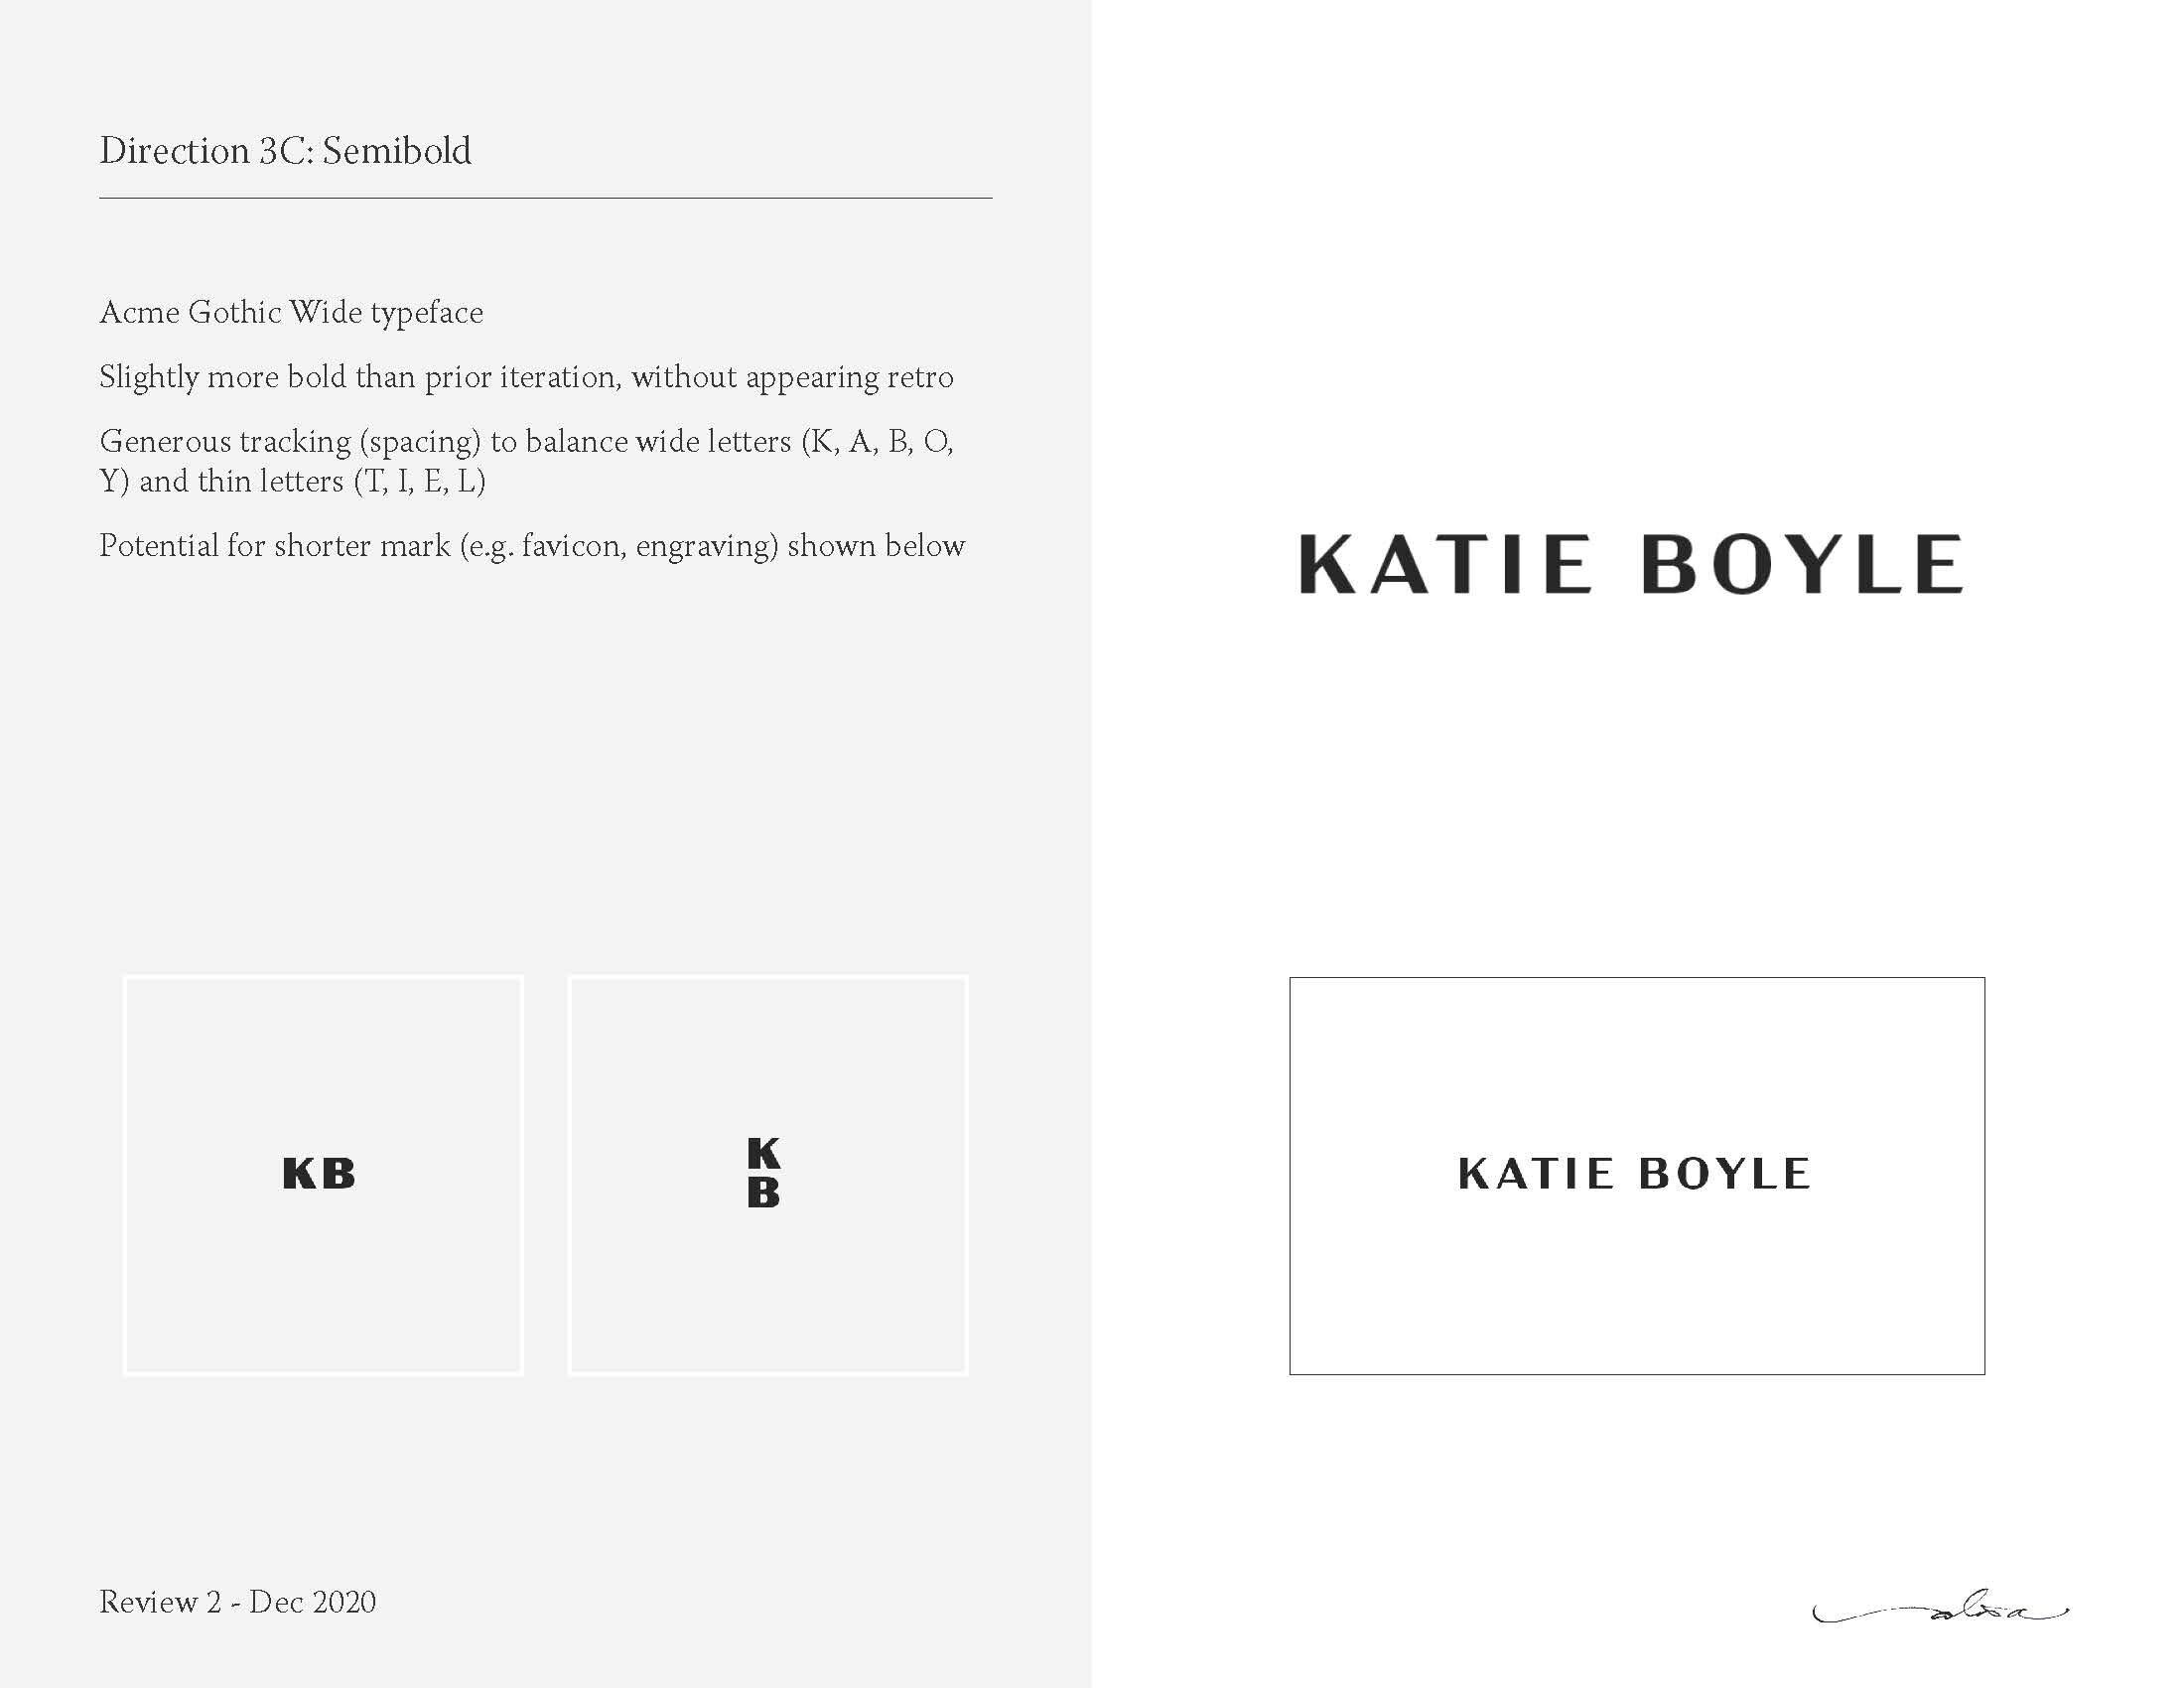 20201229_KatieBoyle-Wordmark-Rev2_Page_1.jpg